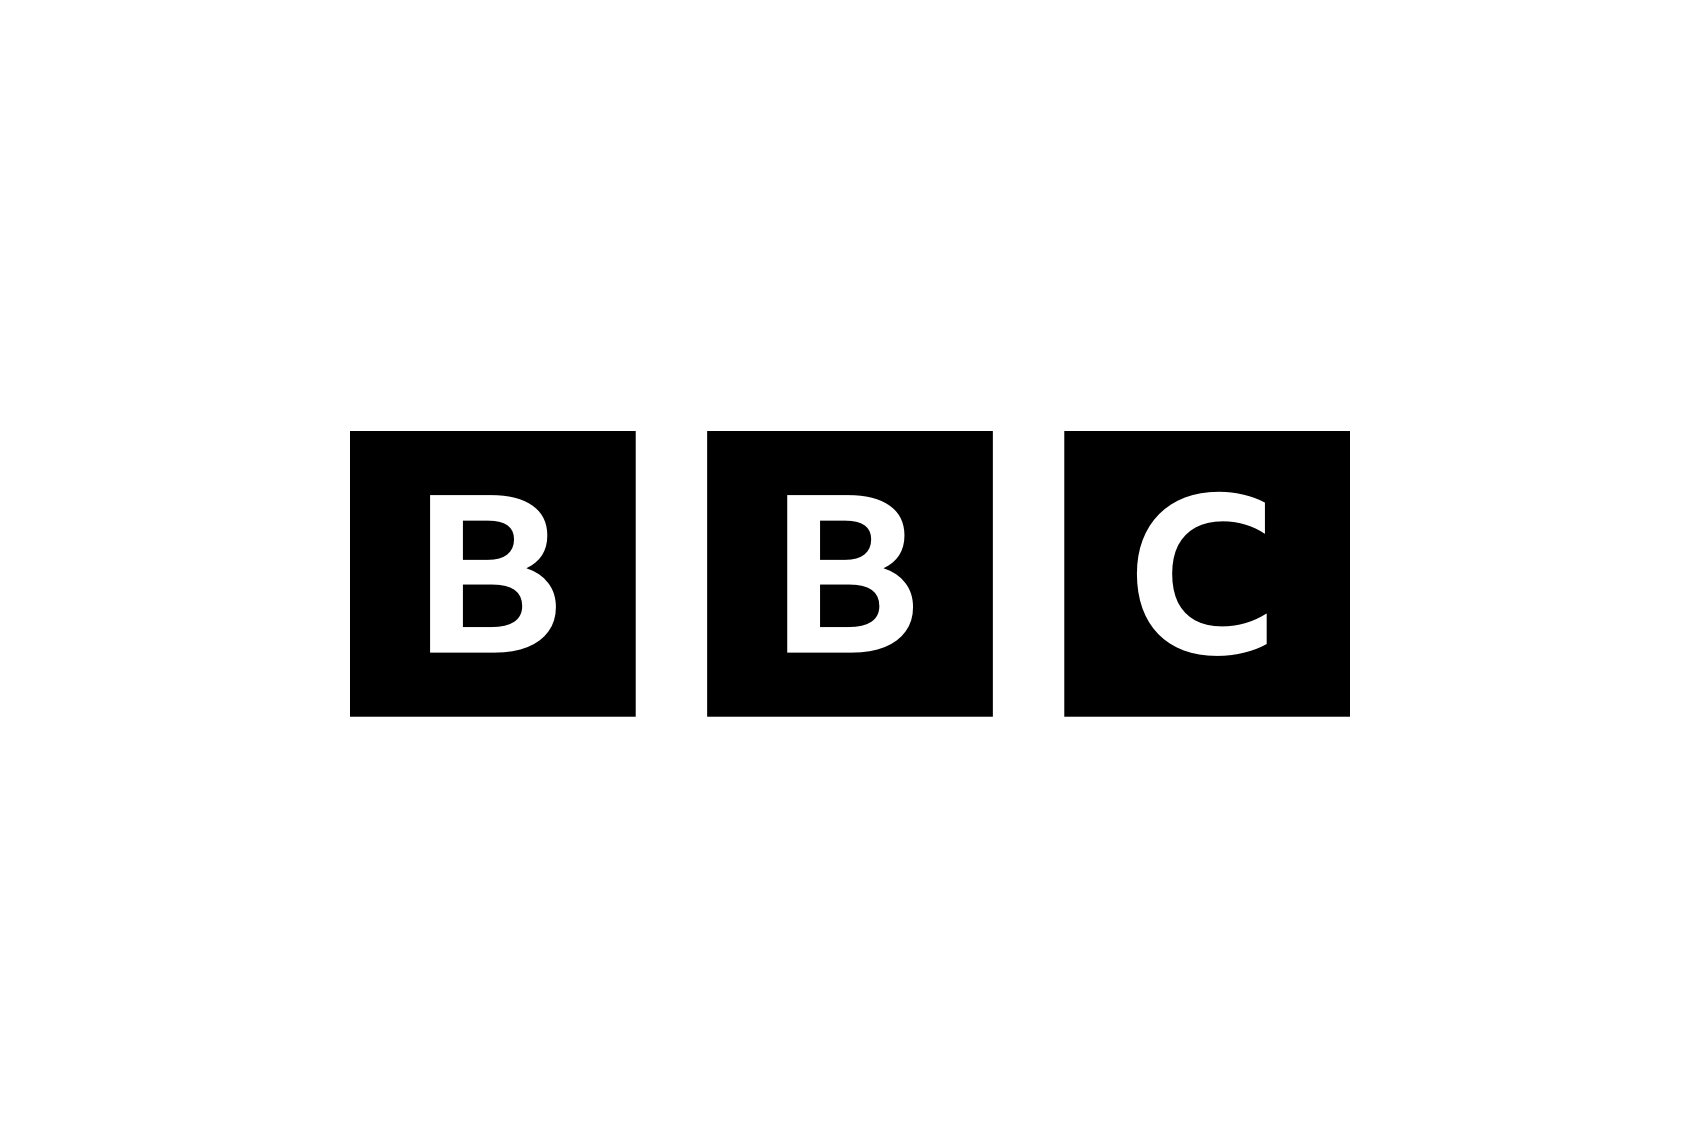 lettermark-logo-bbc